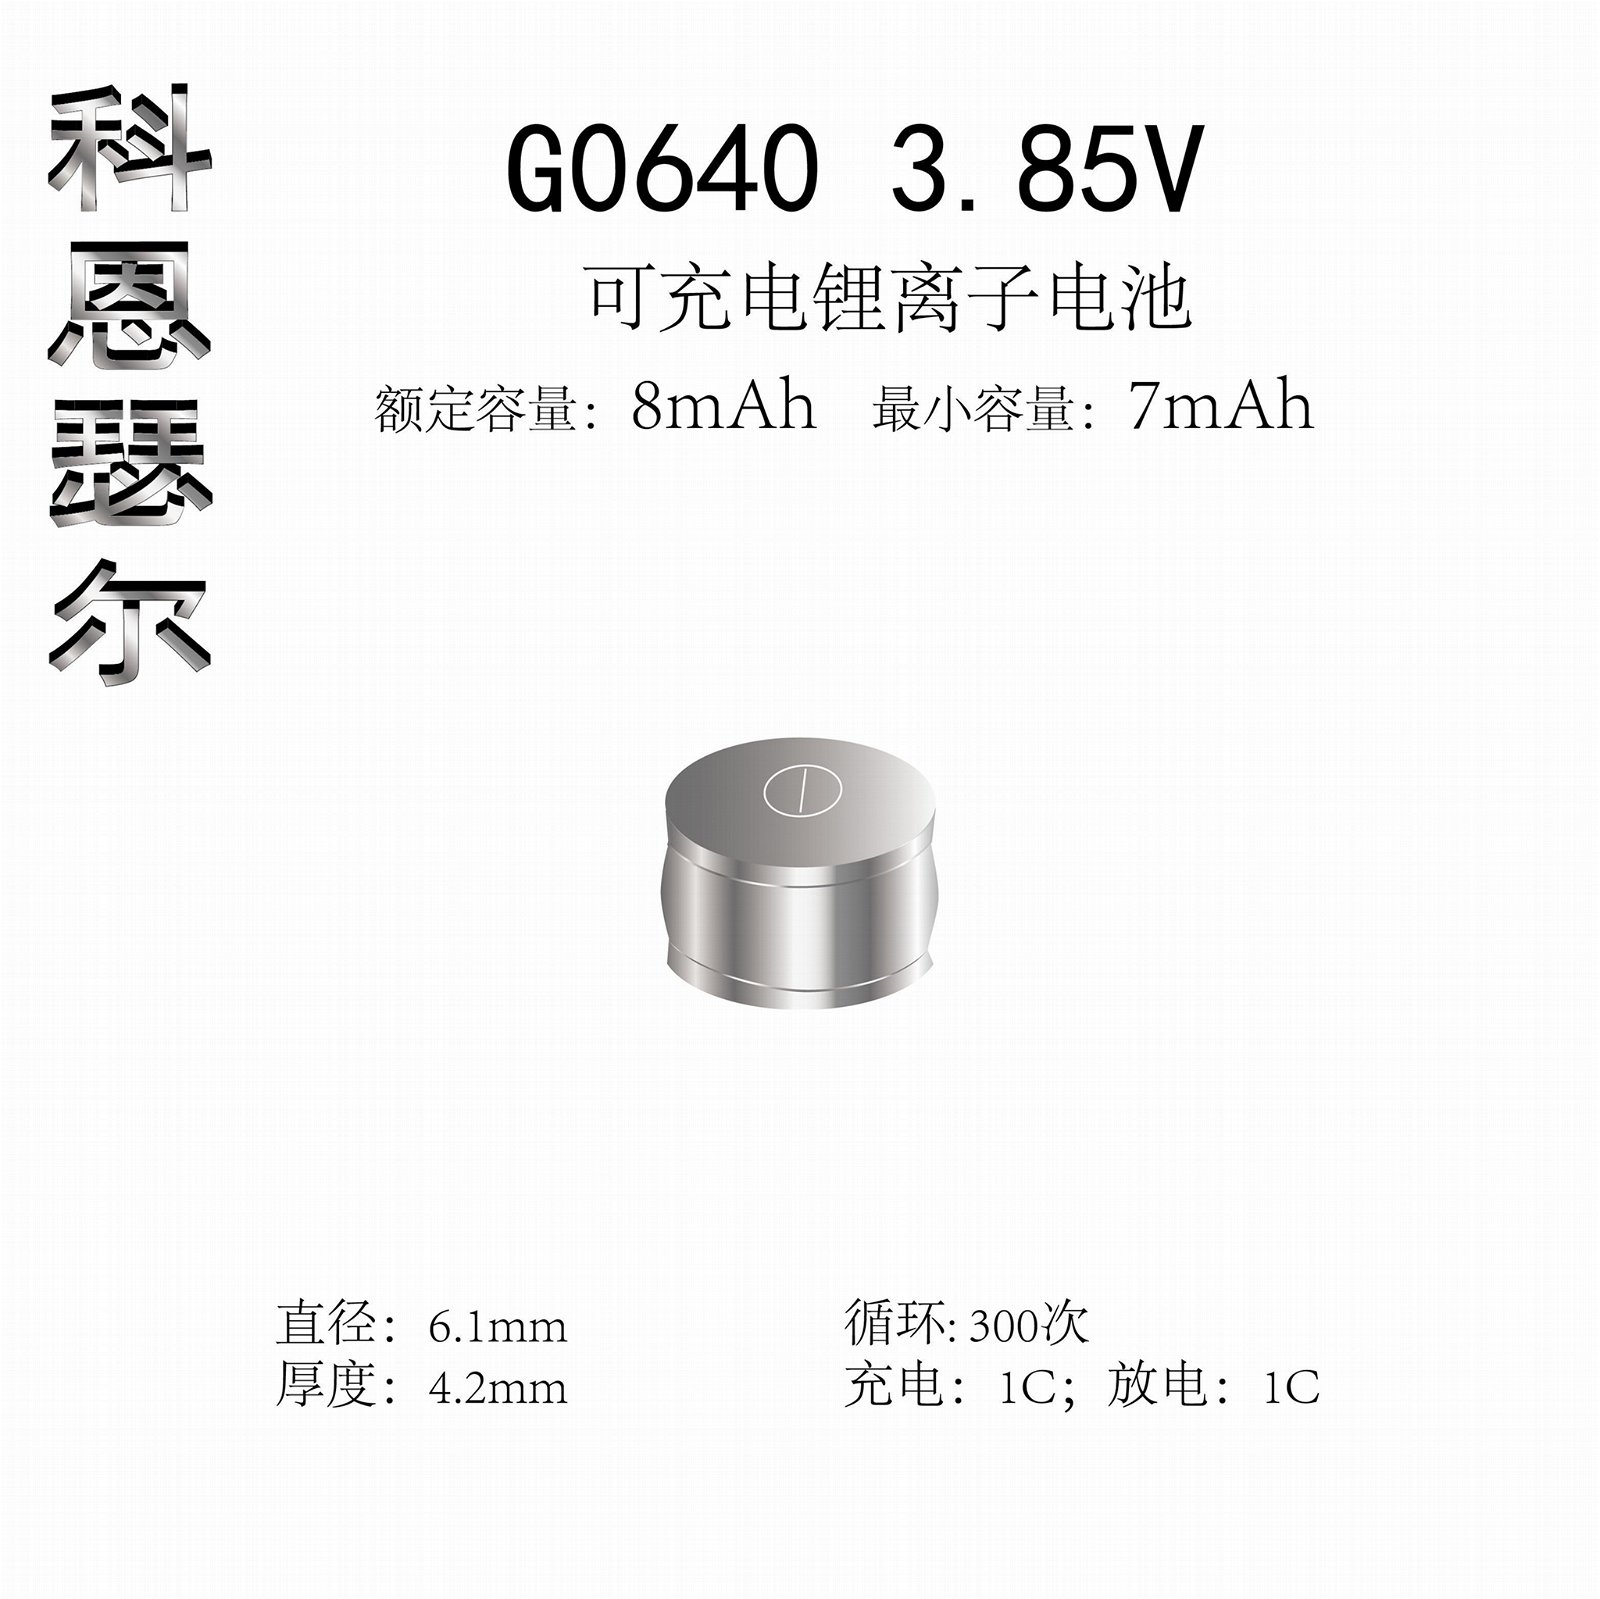 G0640 3.85V 8mAh li-ion coin cell battery 2